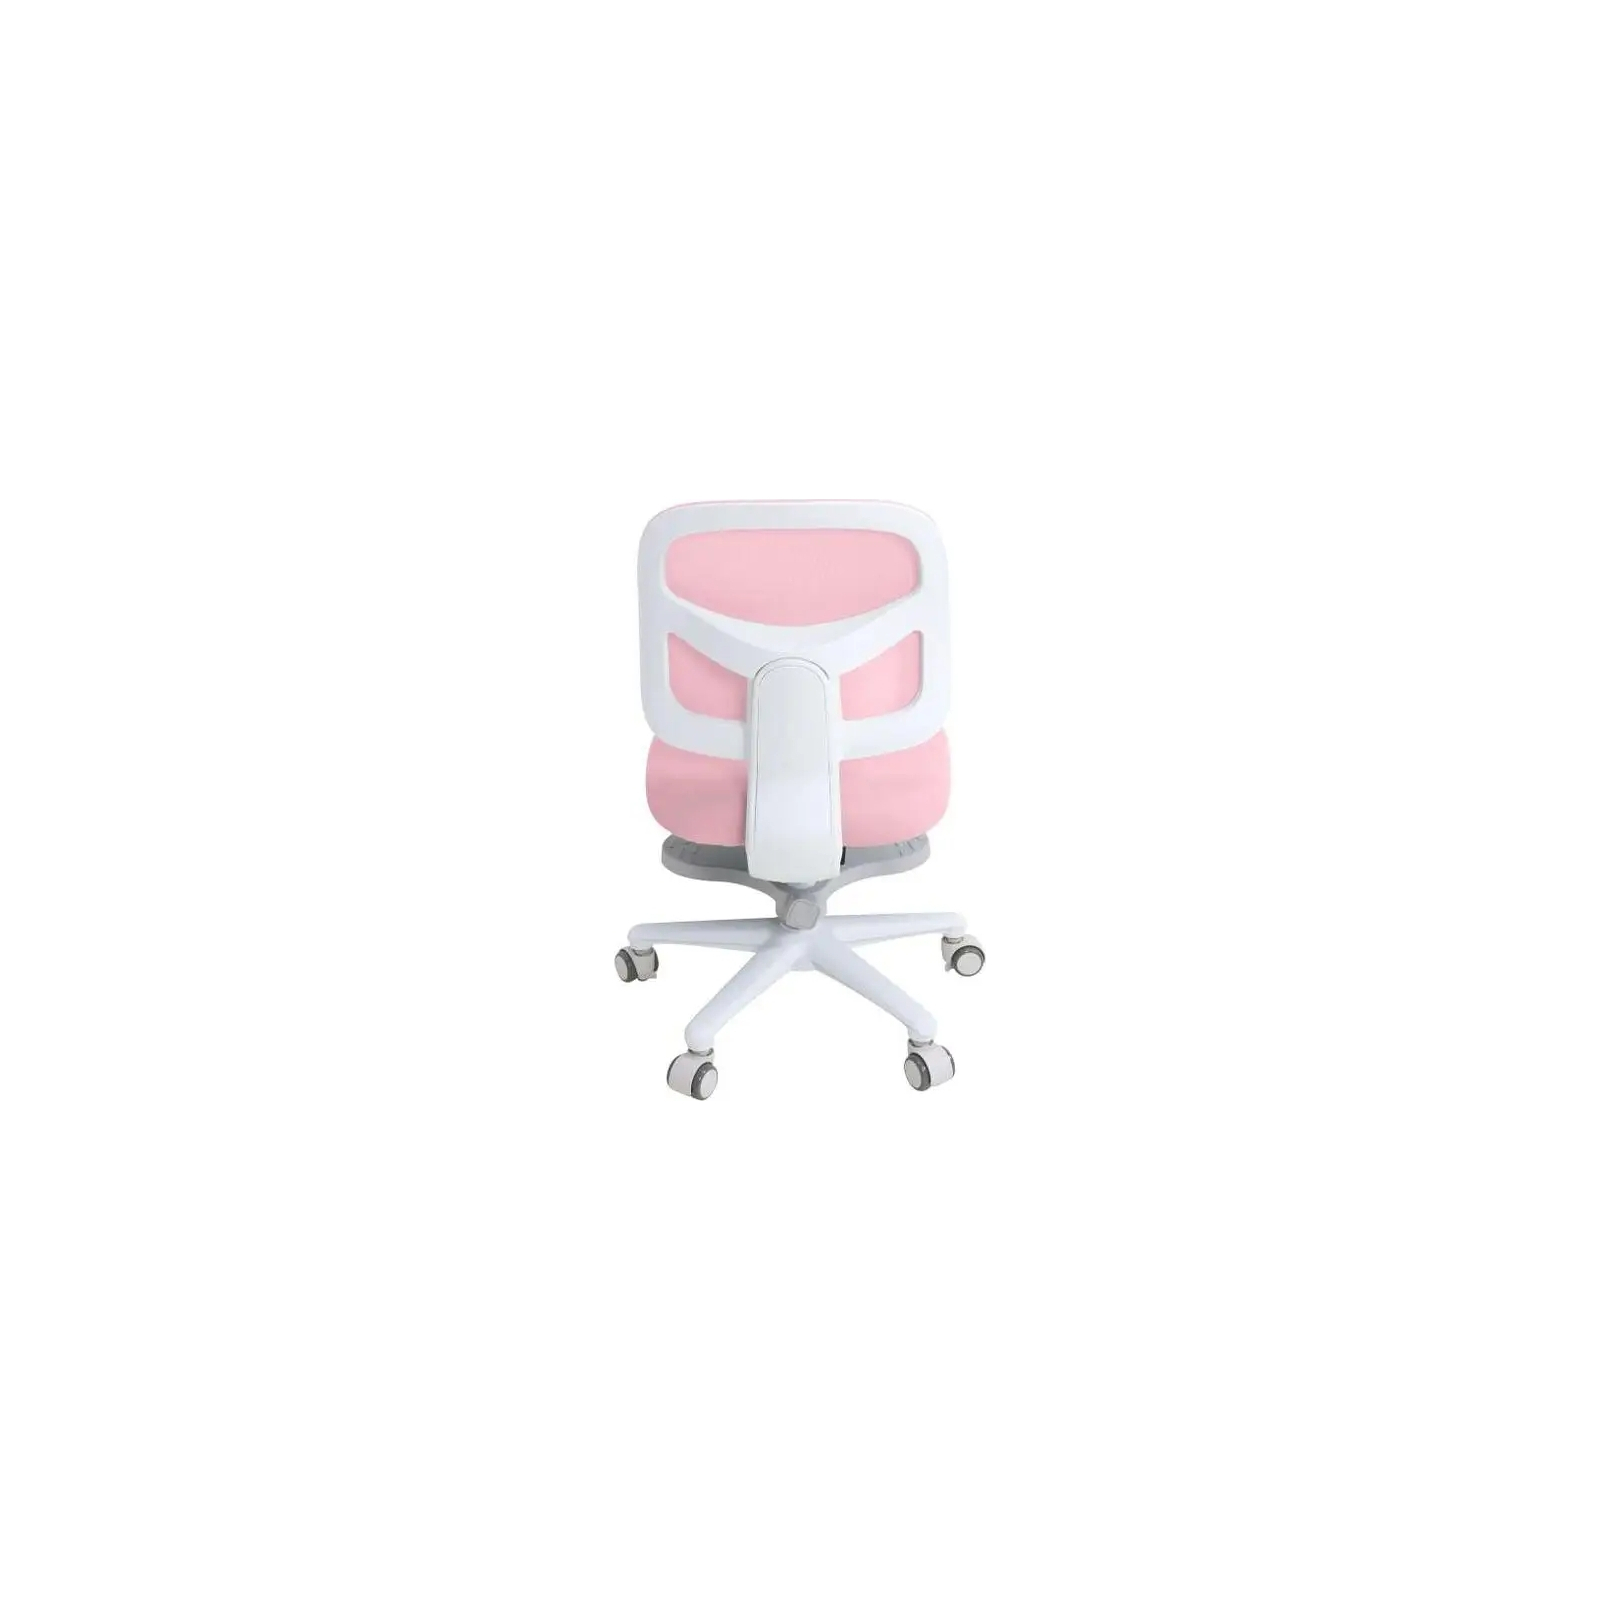 Детское кресло Cubby Marte Pink изображение 4